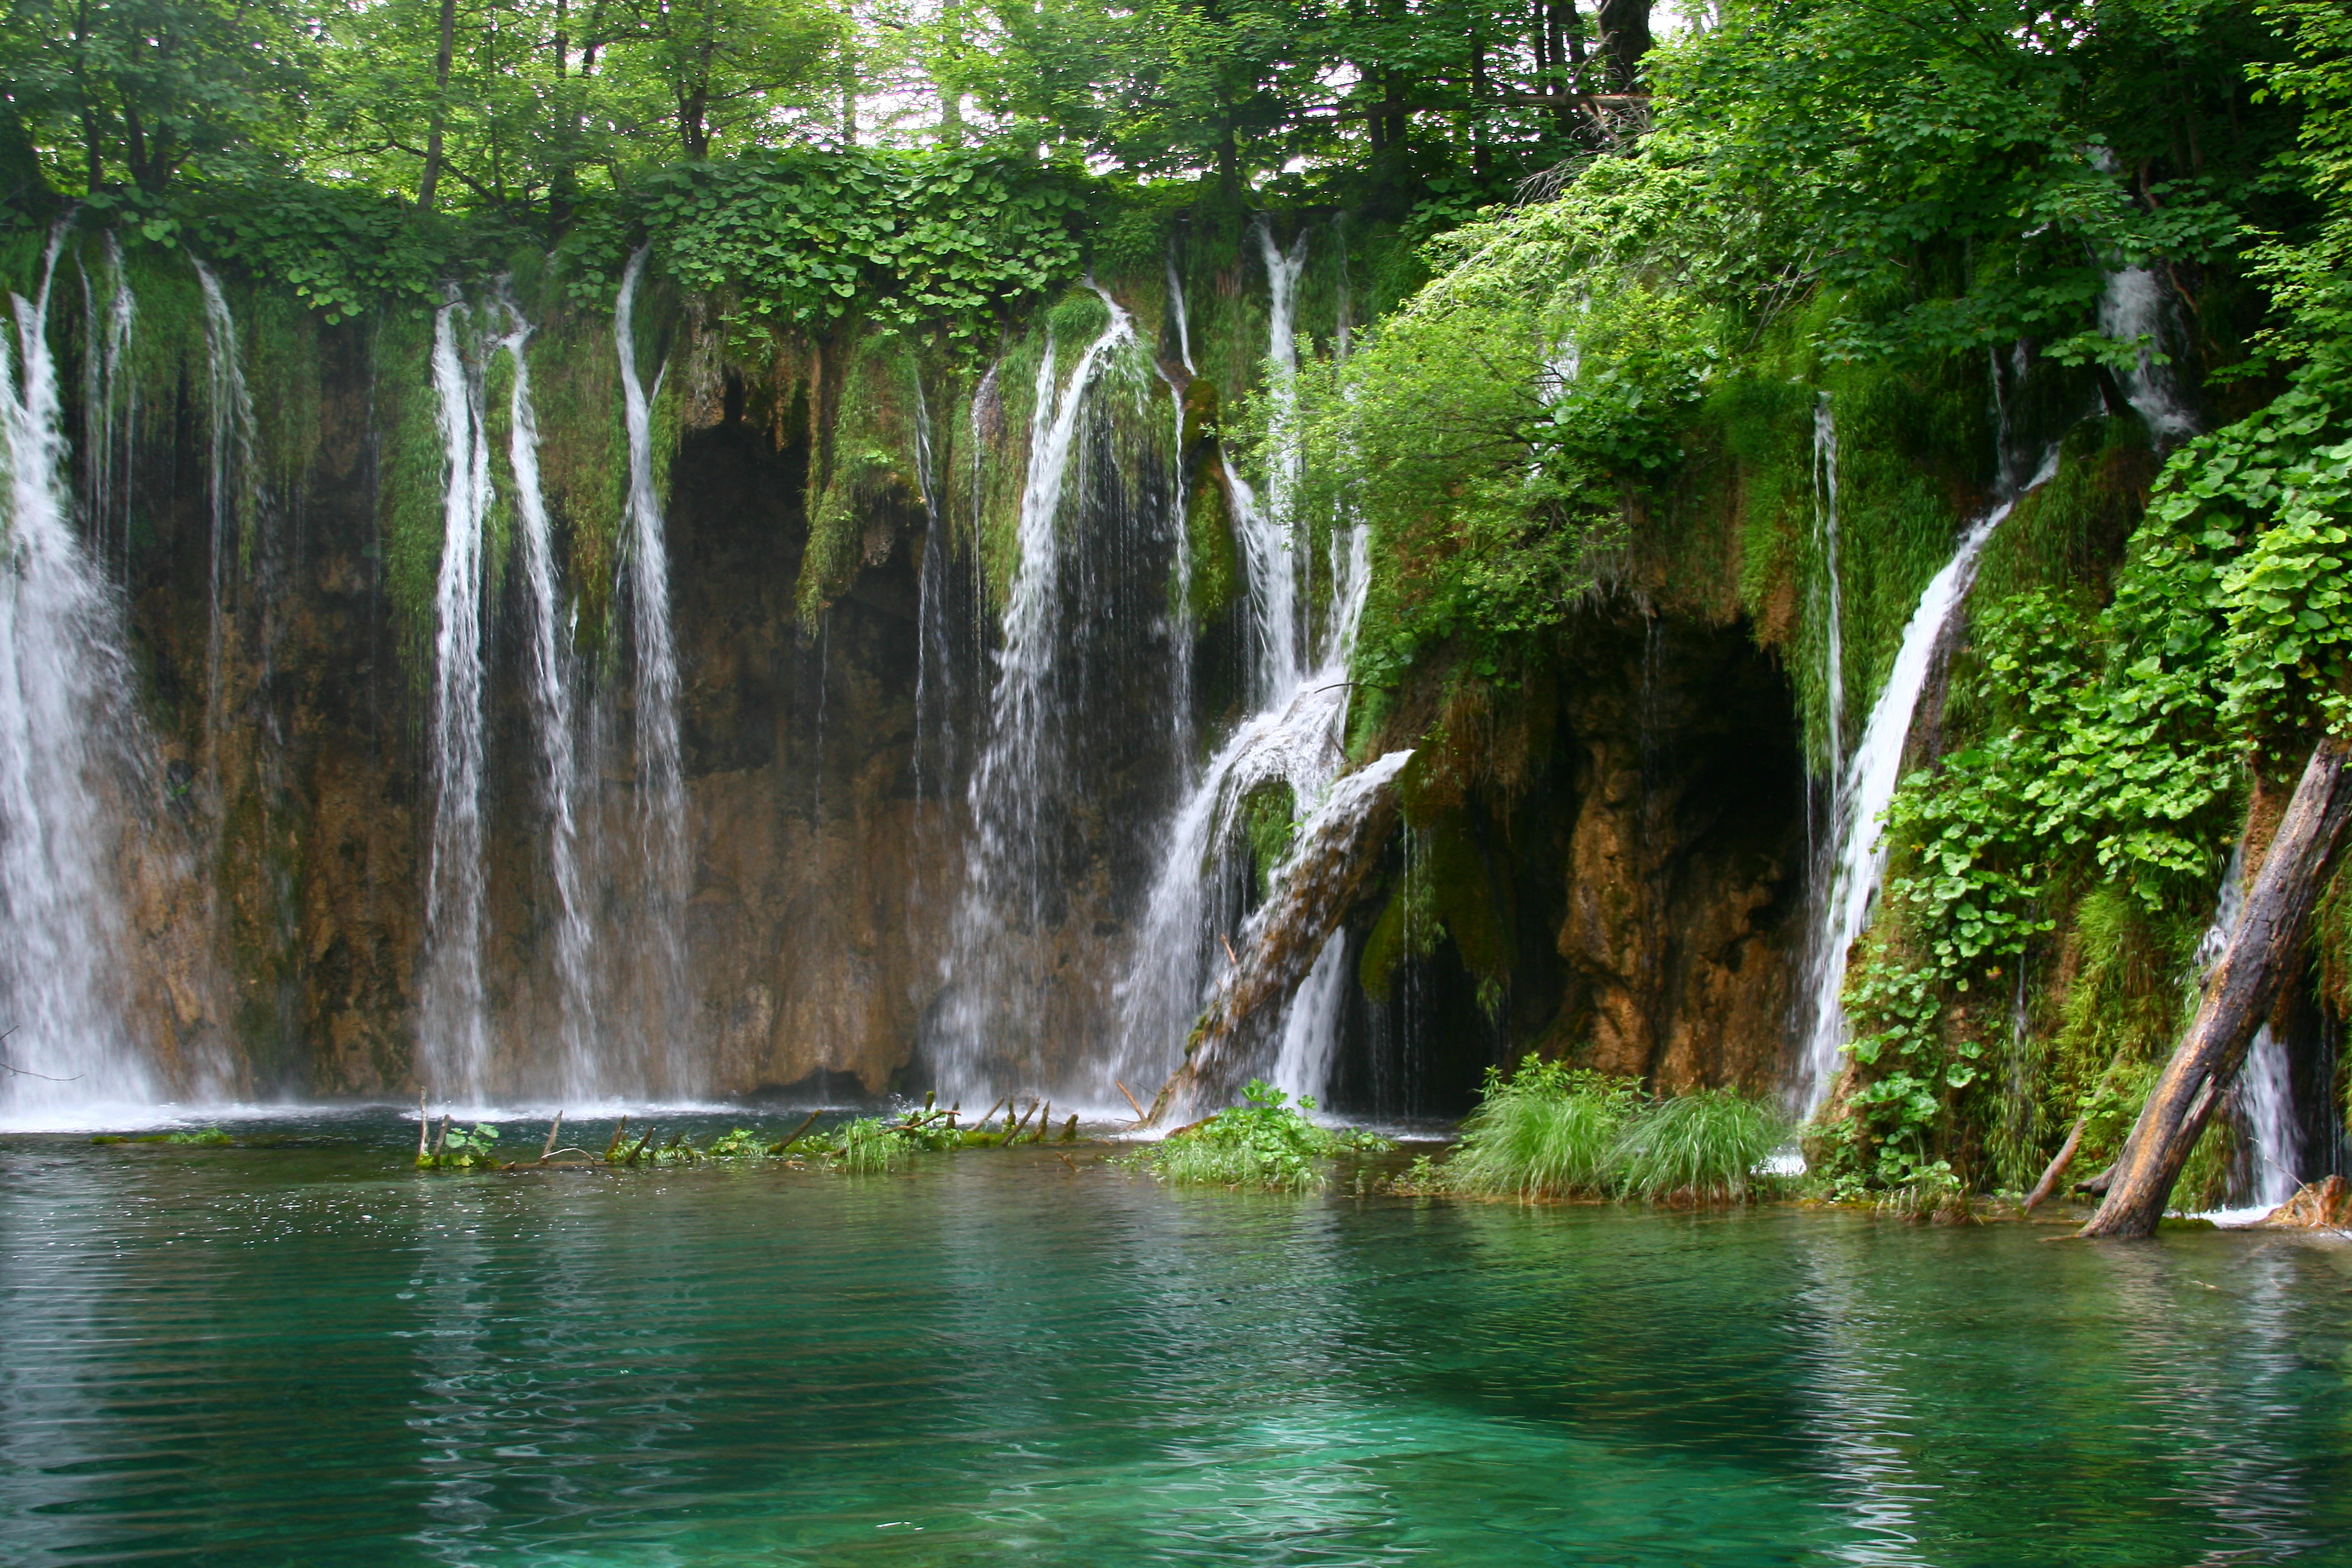 Заставка на телефон для женщин природа. Водопад « голубая Лагуна» ( г.холм). Дагомыс водопады. Природа водопад. Водопад зелень.